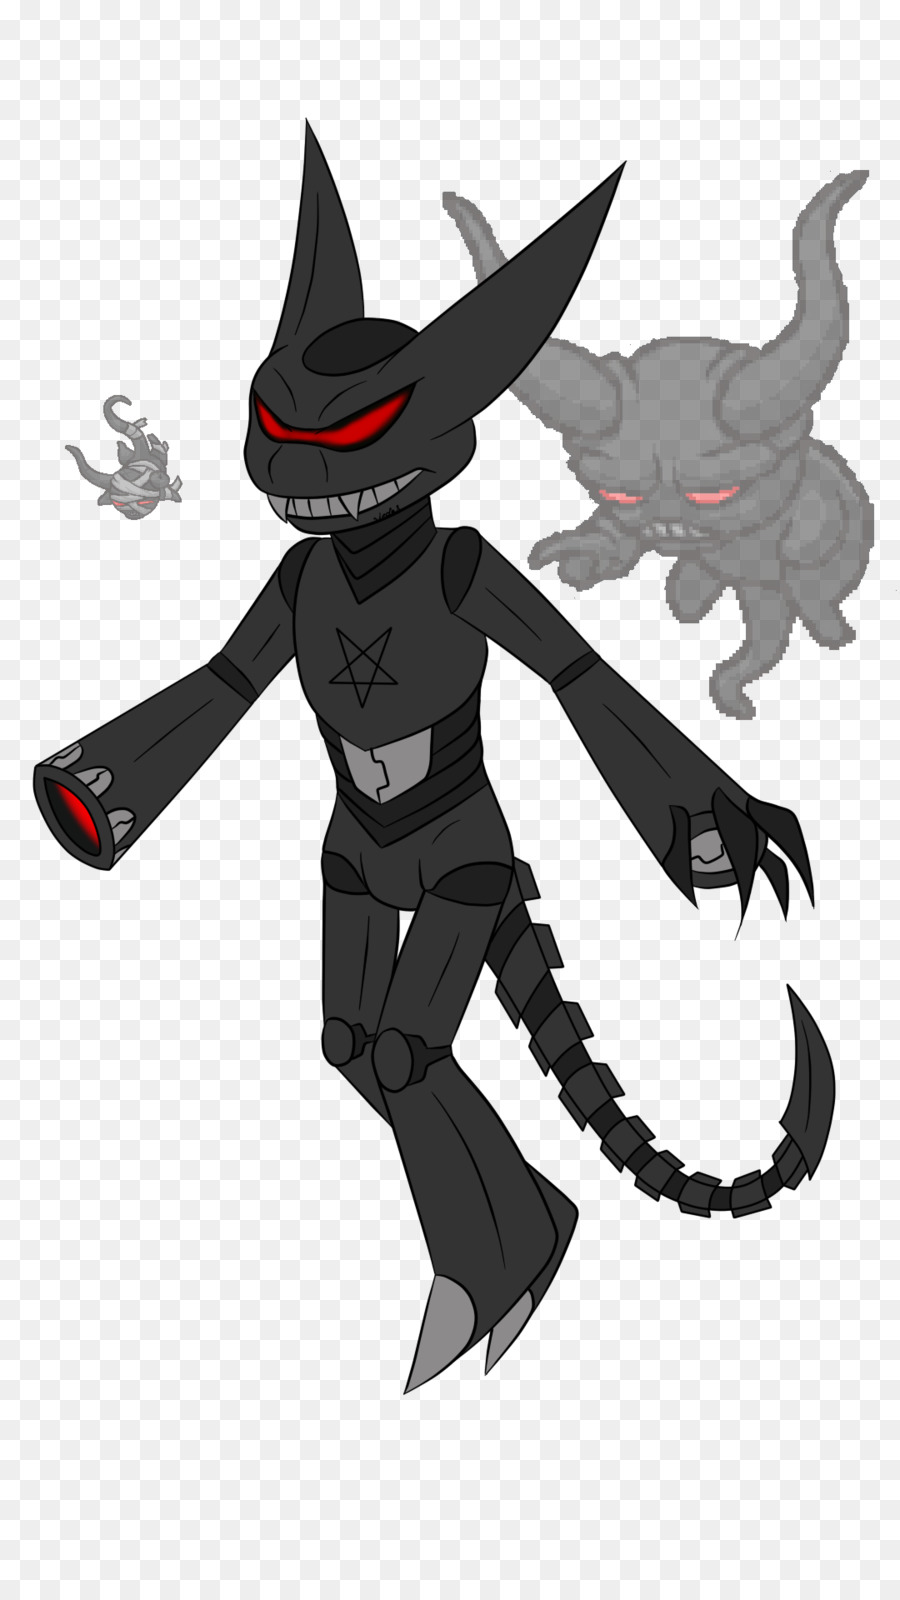 Demone Illustrazione di Cartone animato creatura Leggendaria - demone